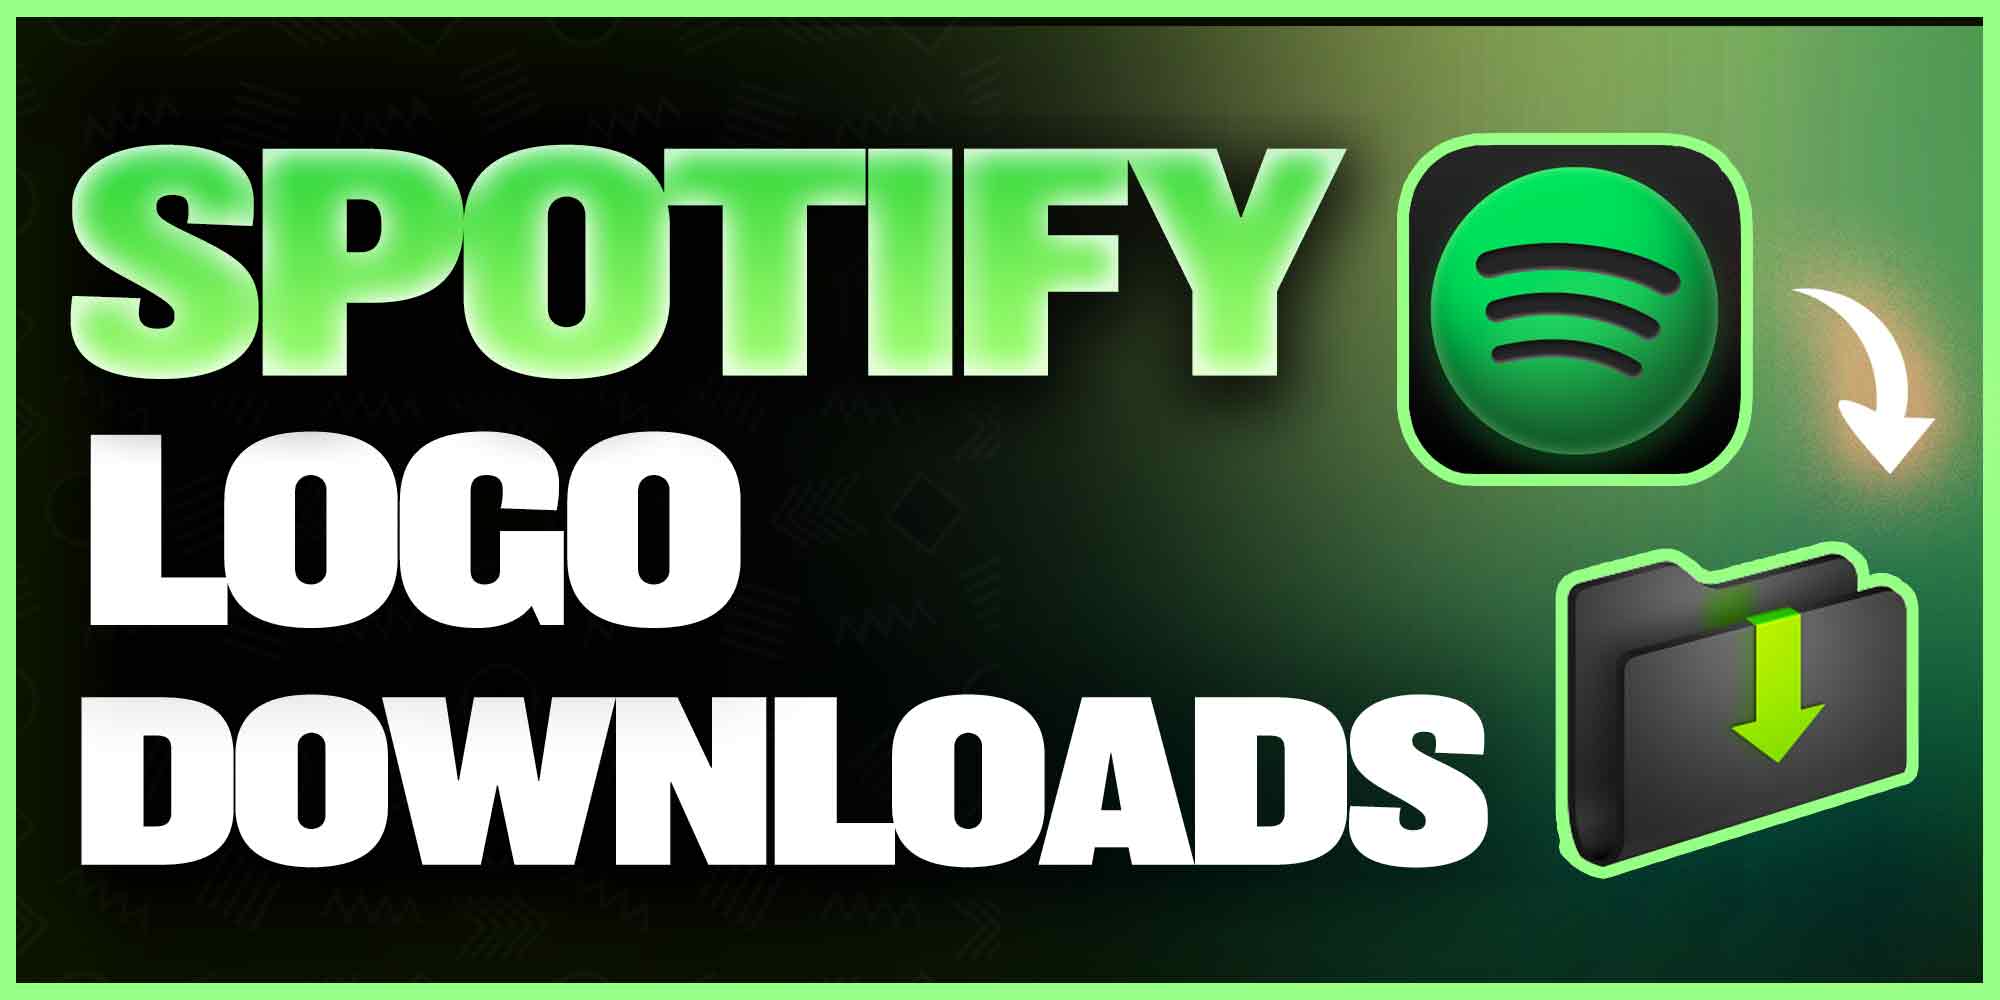 Free Spotify Logo Downloads